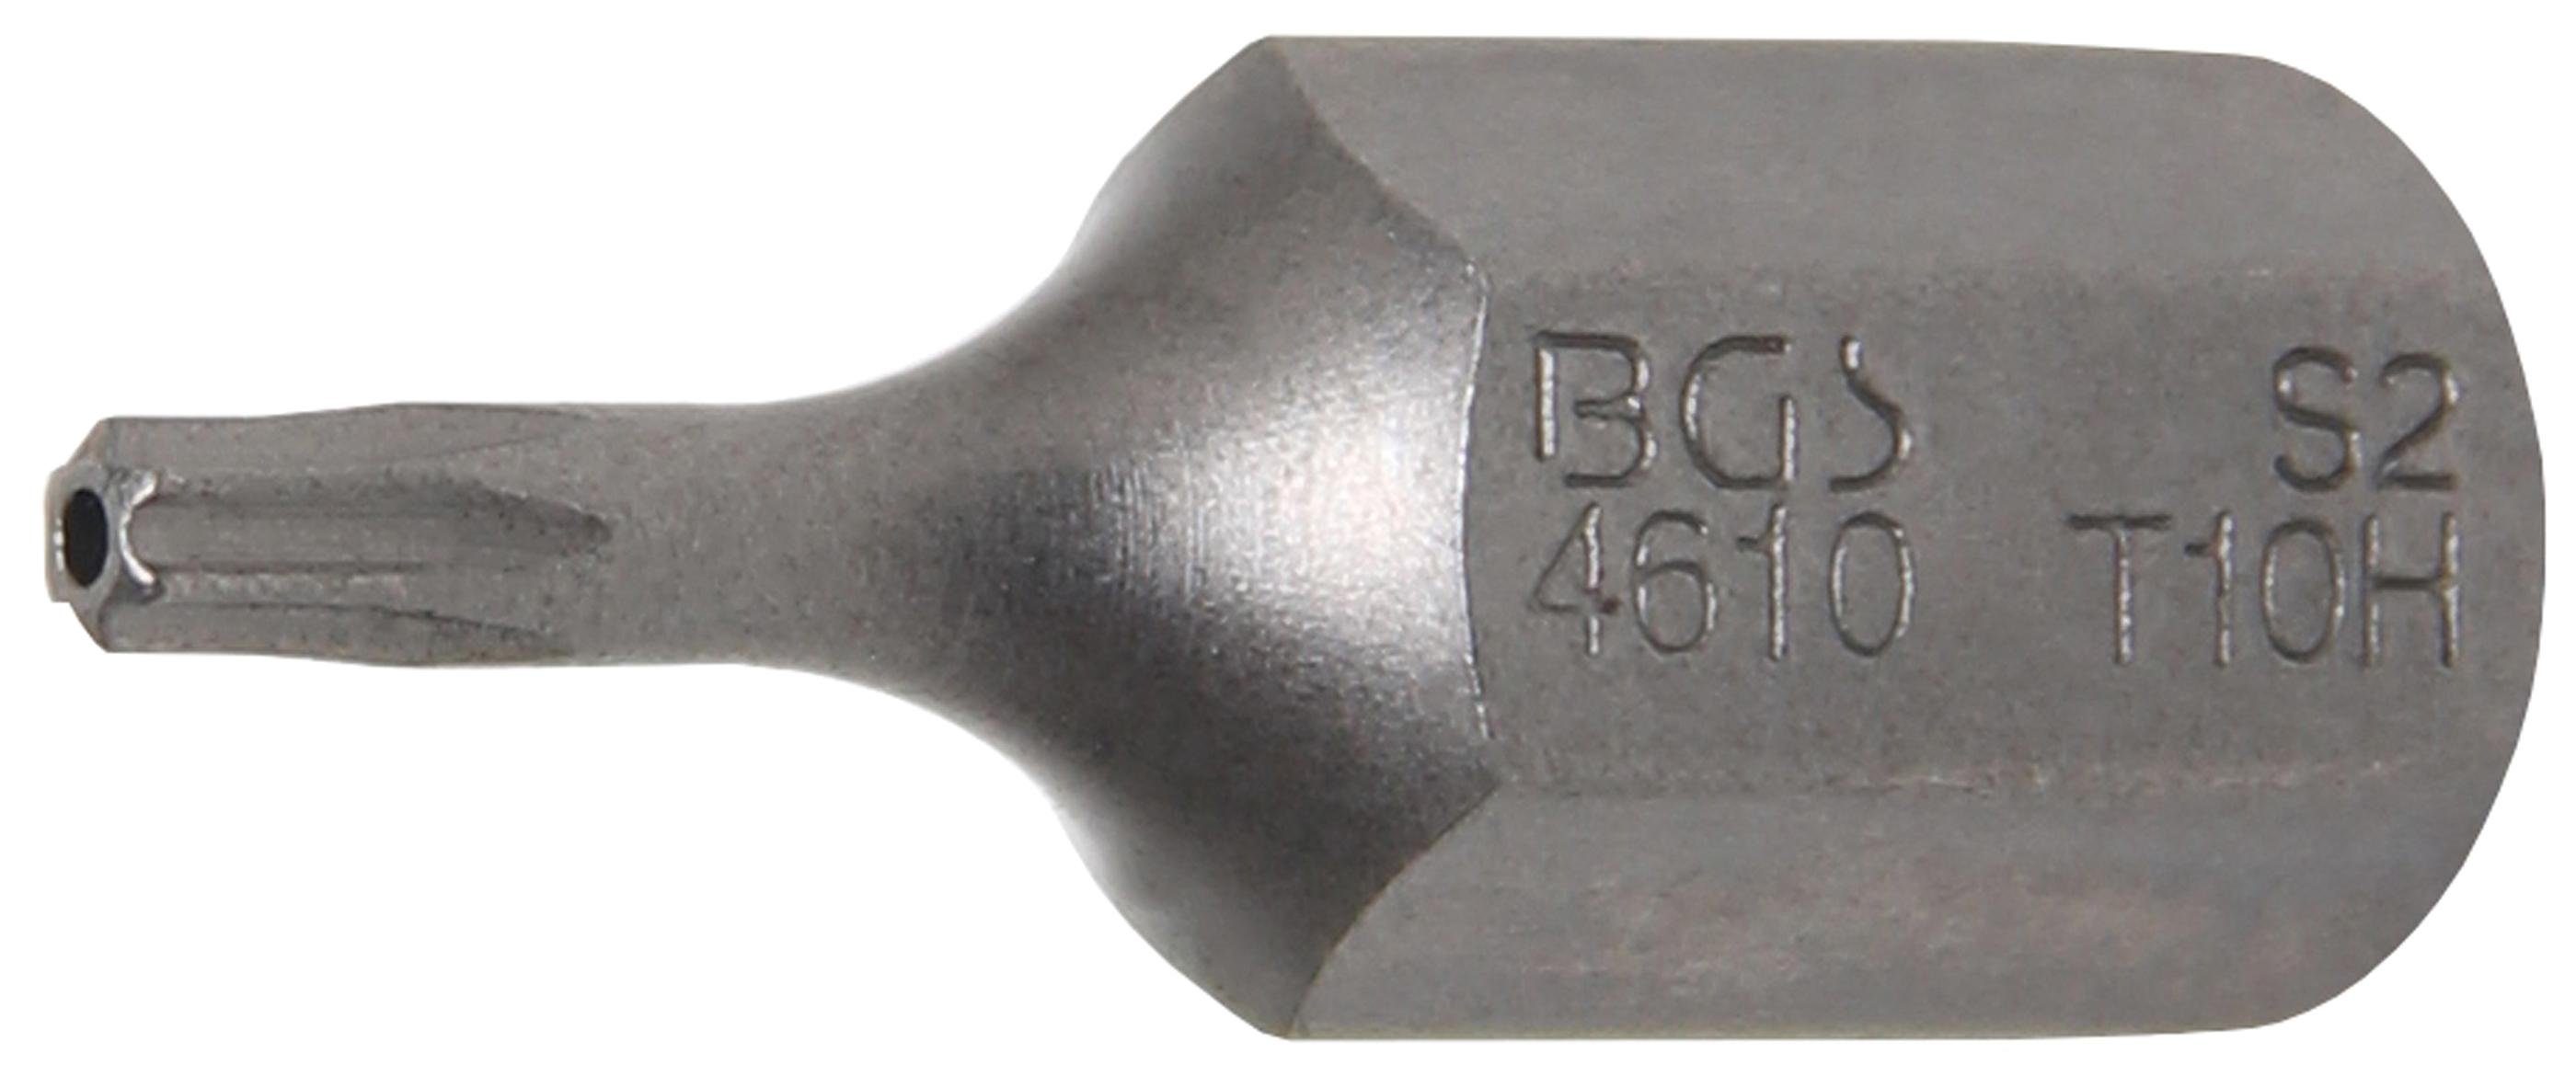 BGS technic Bit-Schraubendreher Bit, Antrieb (für mm Torx) Außensechskant T10 (3/8), Bohrung T-Profil mit 10